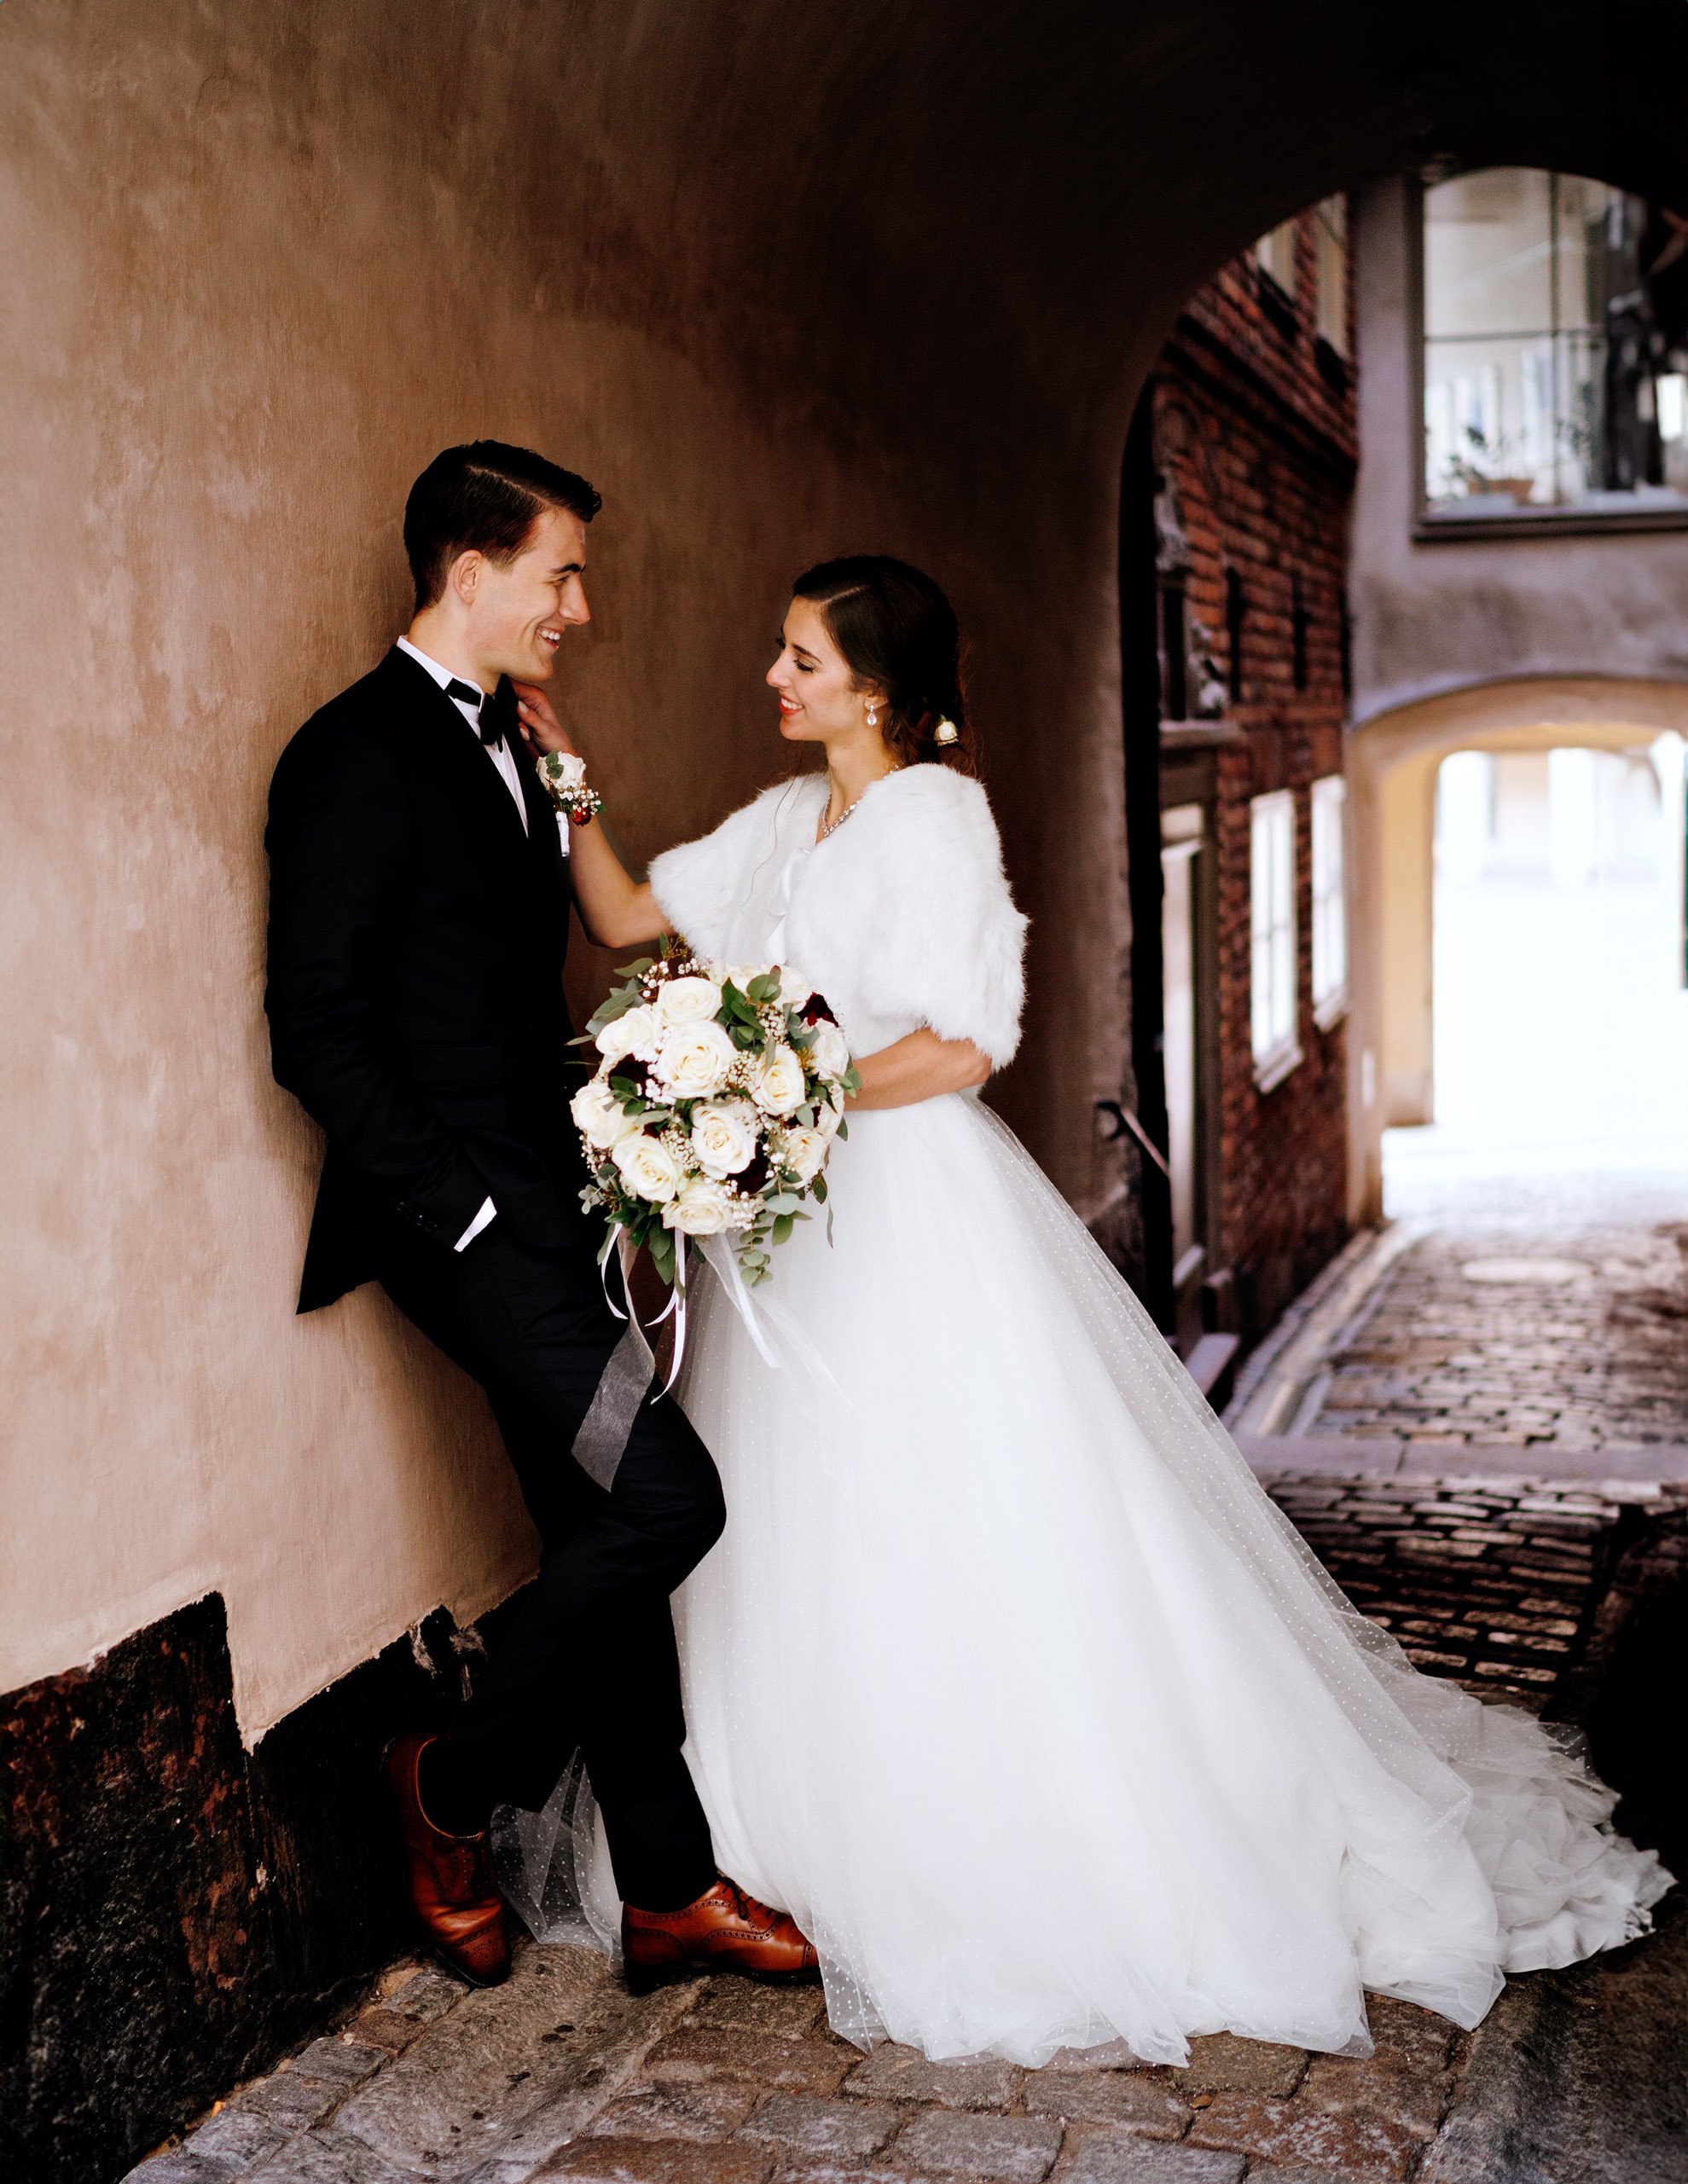 Filip & Sarah Wedding - 32.jpg